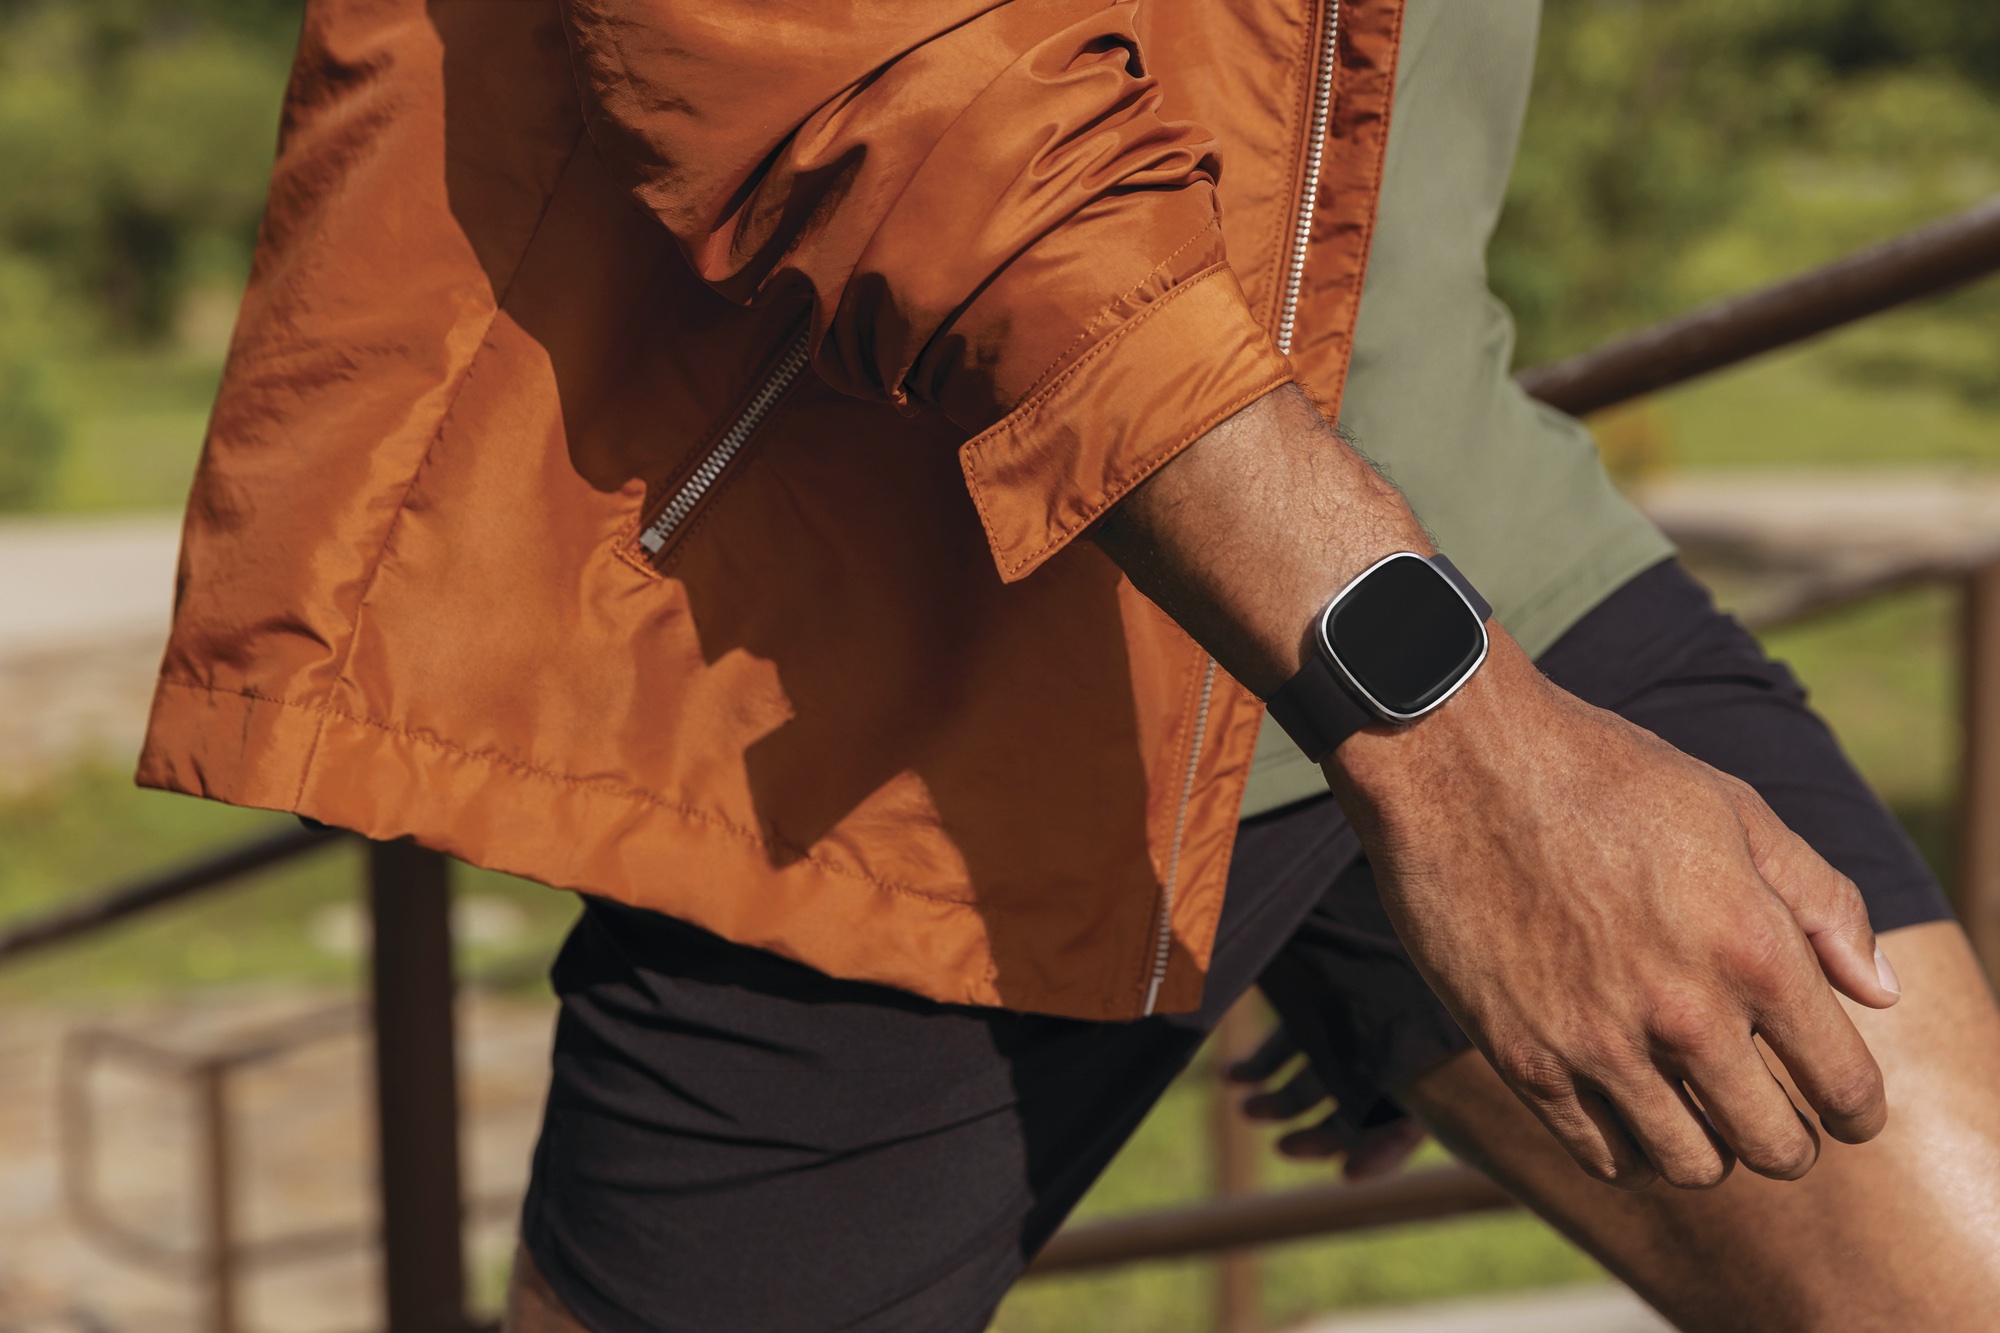 Man wearing Fitbit Sense fitness tracker, orange jacket, orange shirt, man's arm